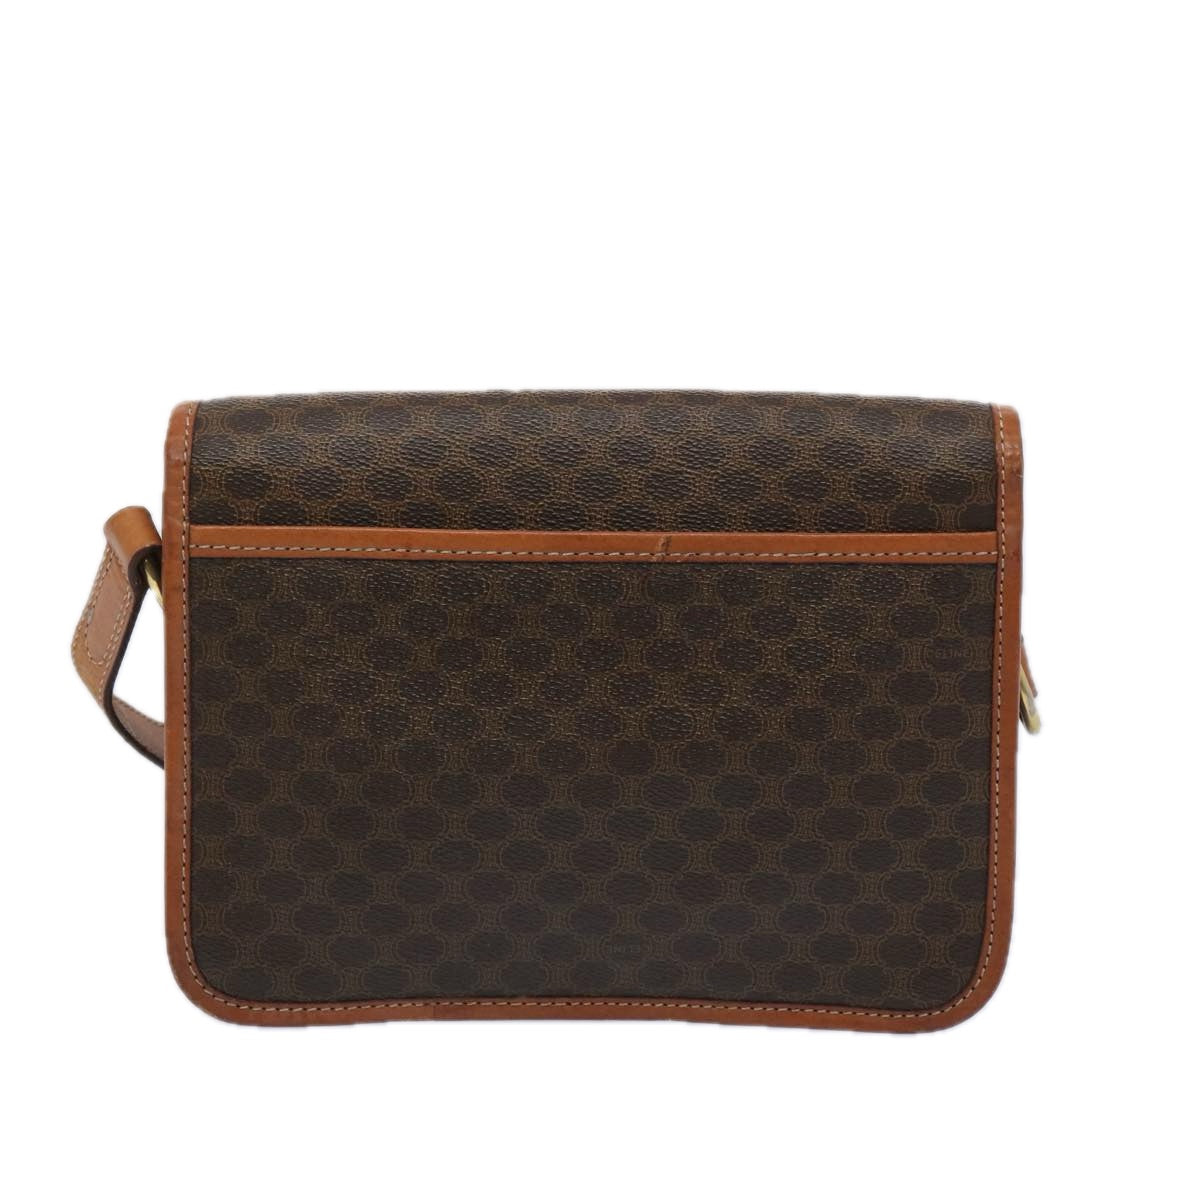 CELINE Macadam Canvas Shoulder Bag PVC Leather Brown Auth 65289 - 0